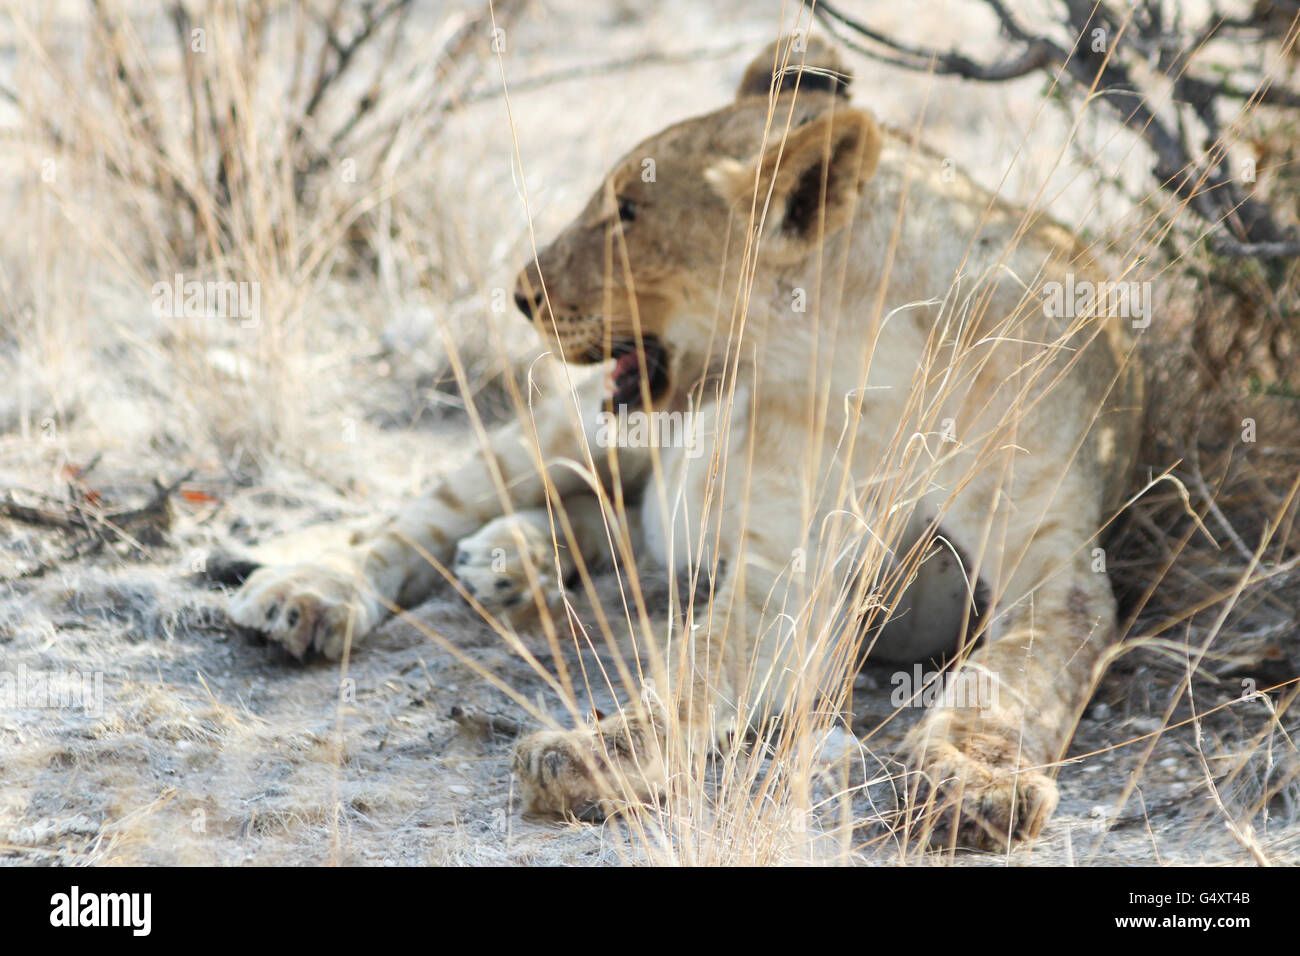 La Namibie, Oshikoto, Etosha National Park, Lion's à déchiré la girafe, close-up d'une lionne Banque D'Images